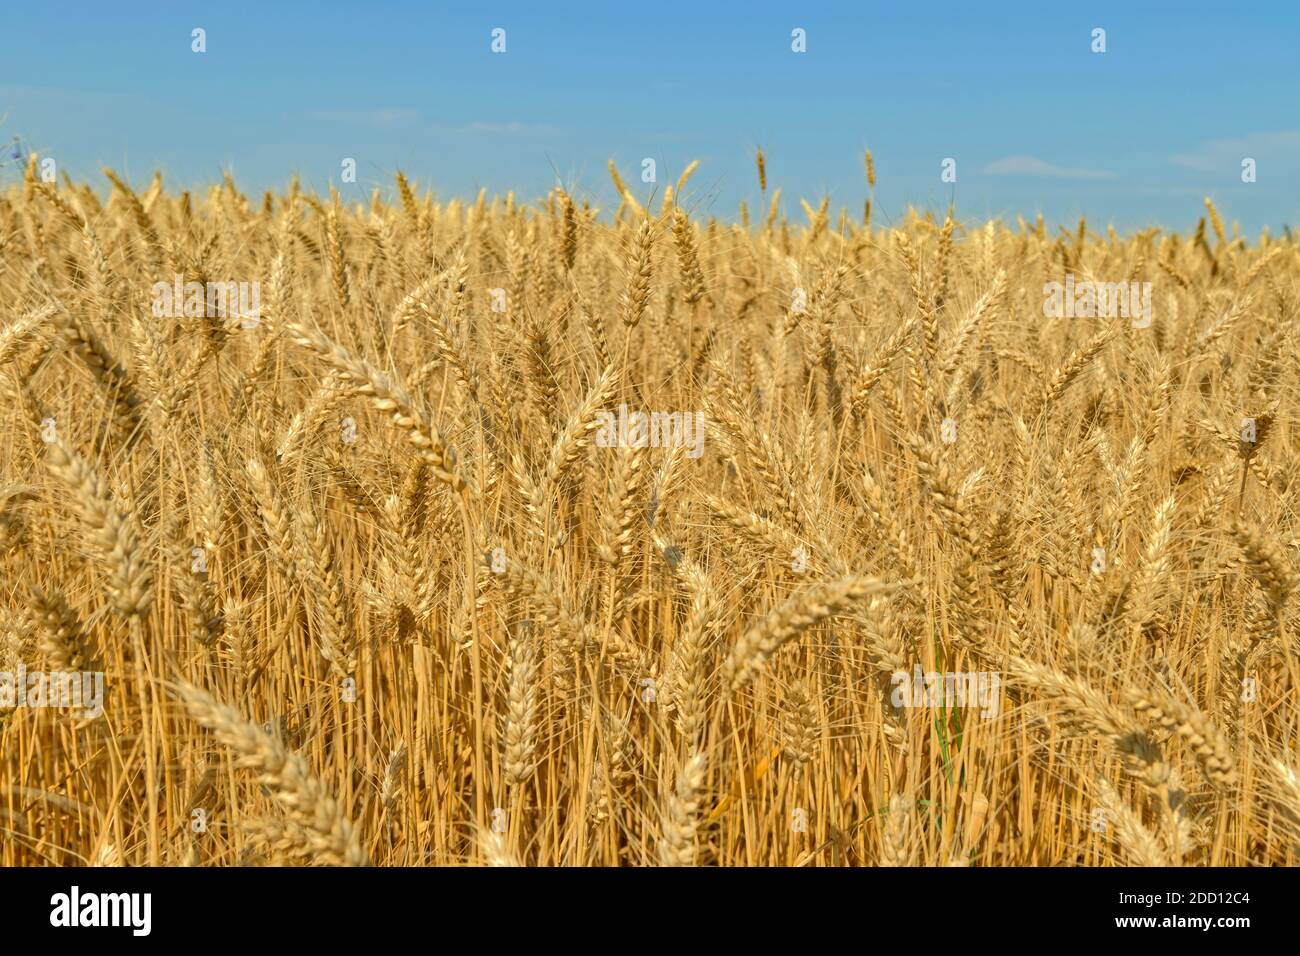 Ripe Durum wheat awaiting harvest. Stock Photo